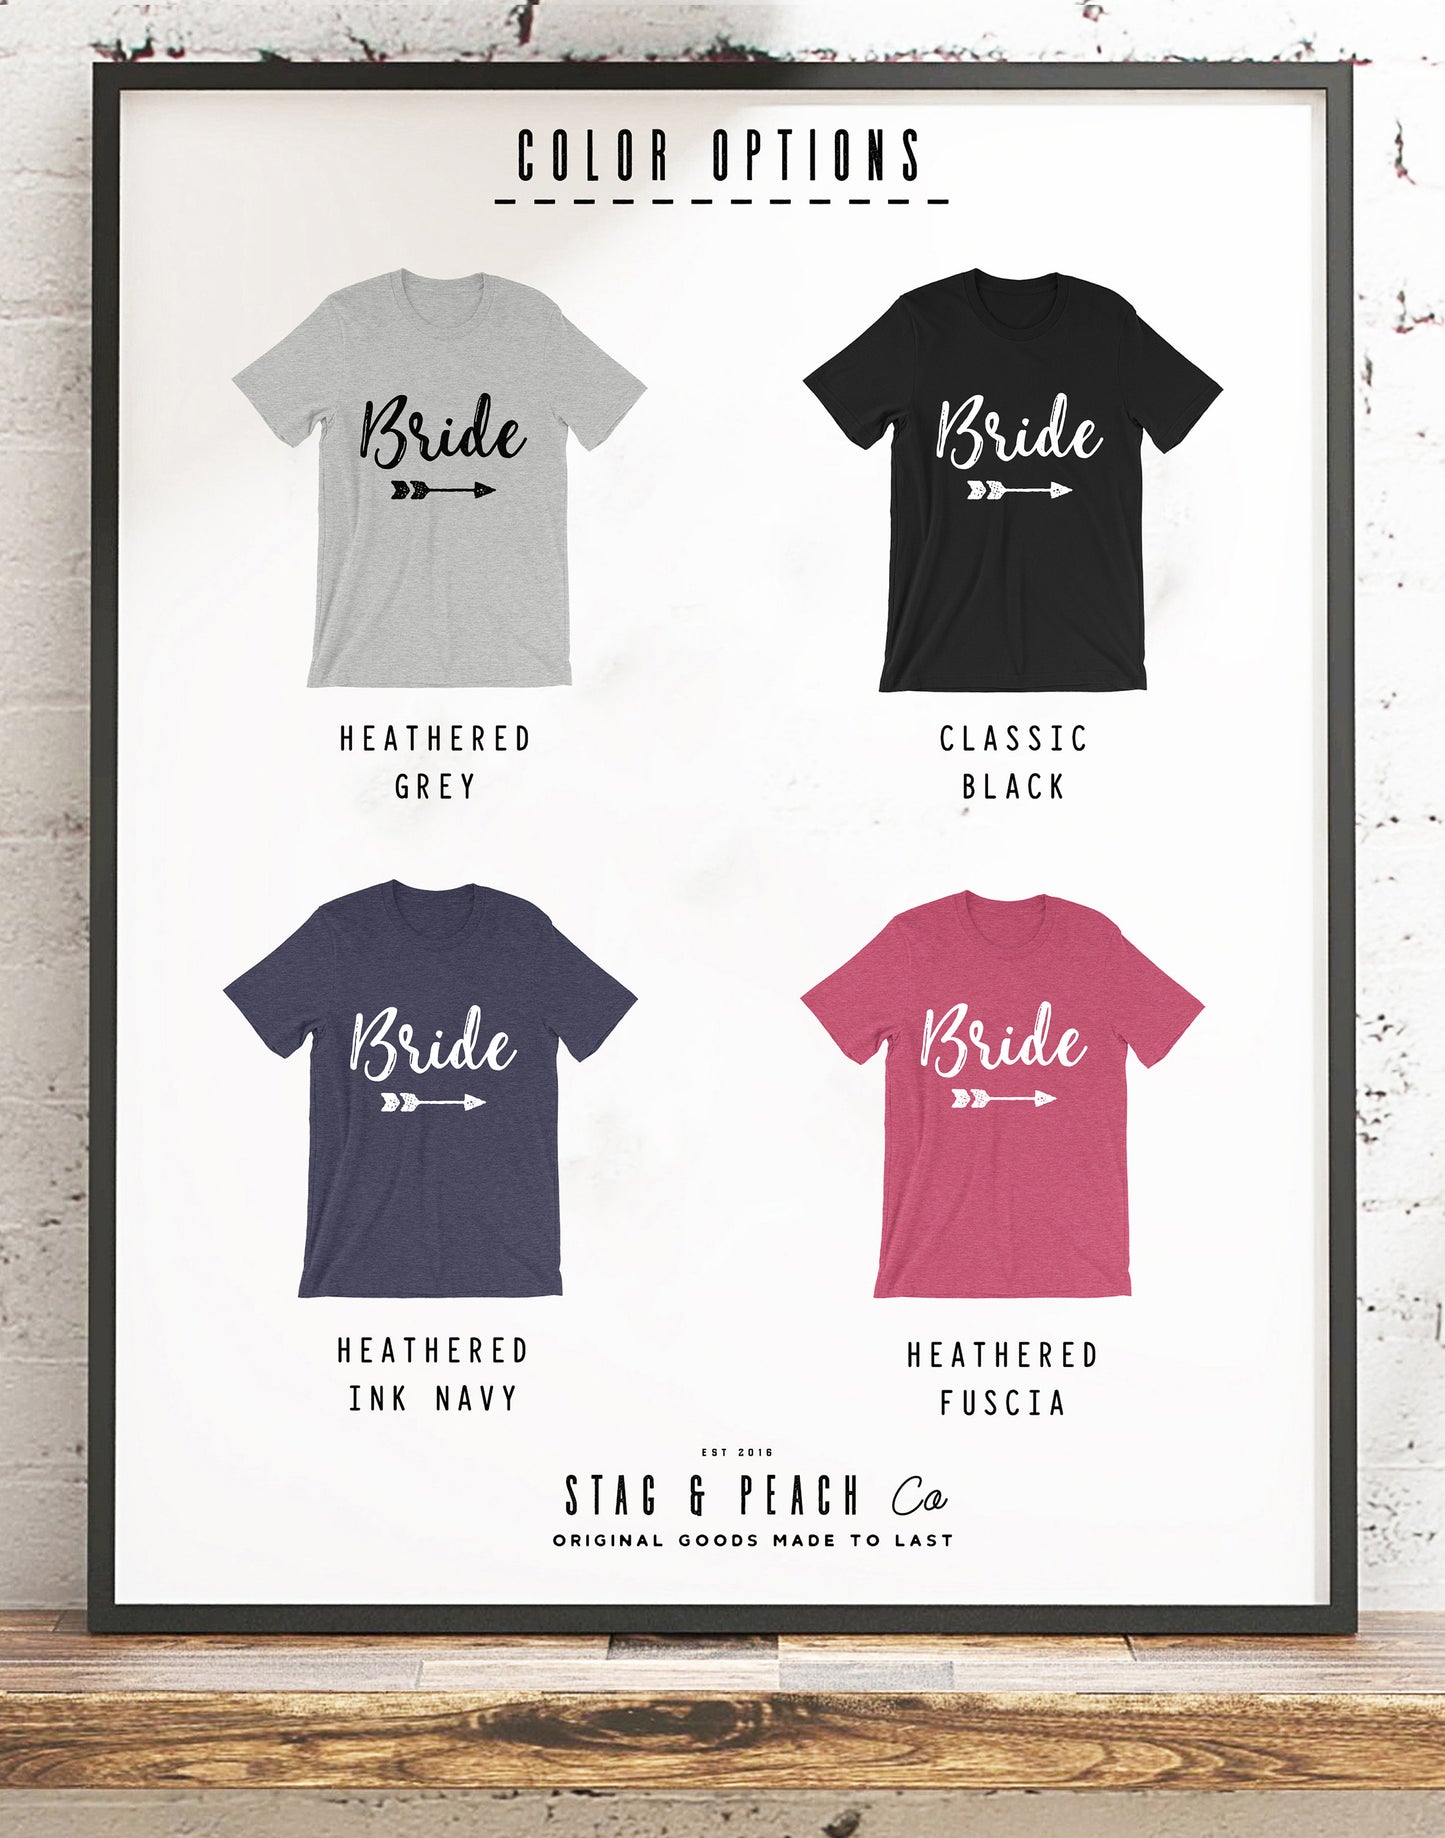 Bride Unisex Shirt - Bachelorette party, Bride shirt, Bachelorette shirts, Wedding shirt, Engagement shirt, Bridal shower gift